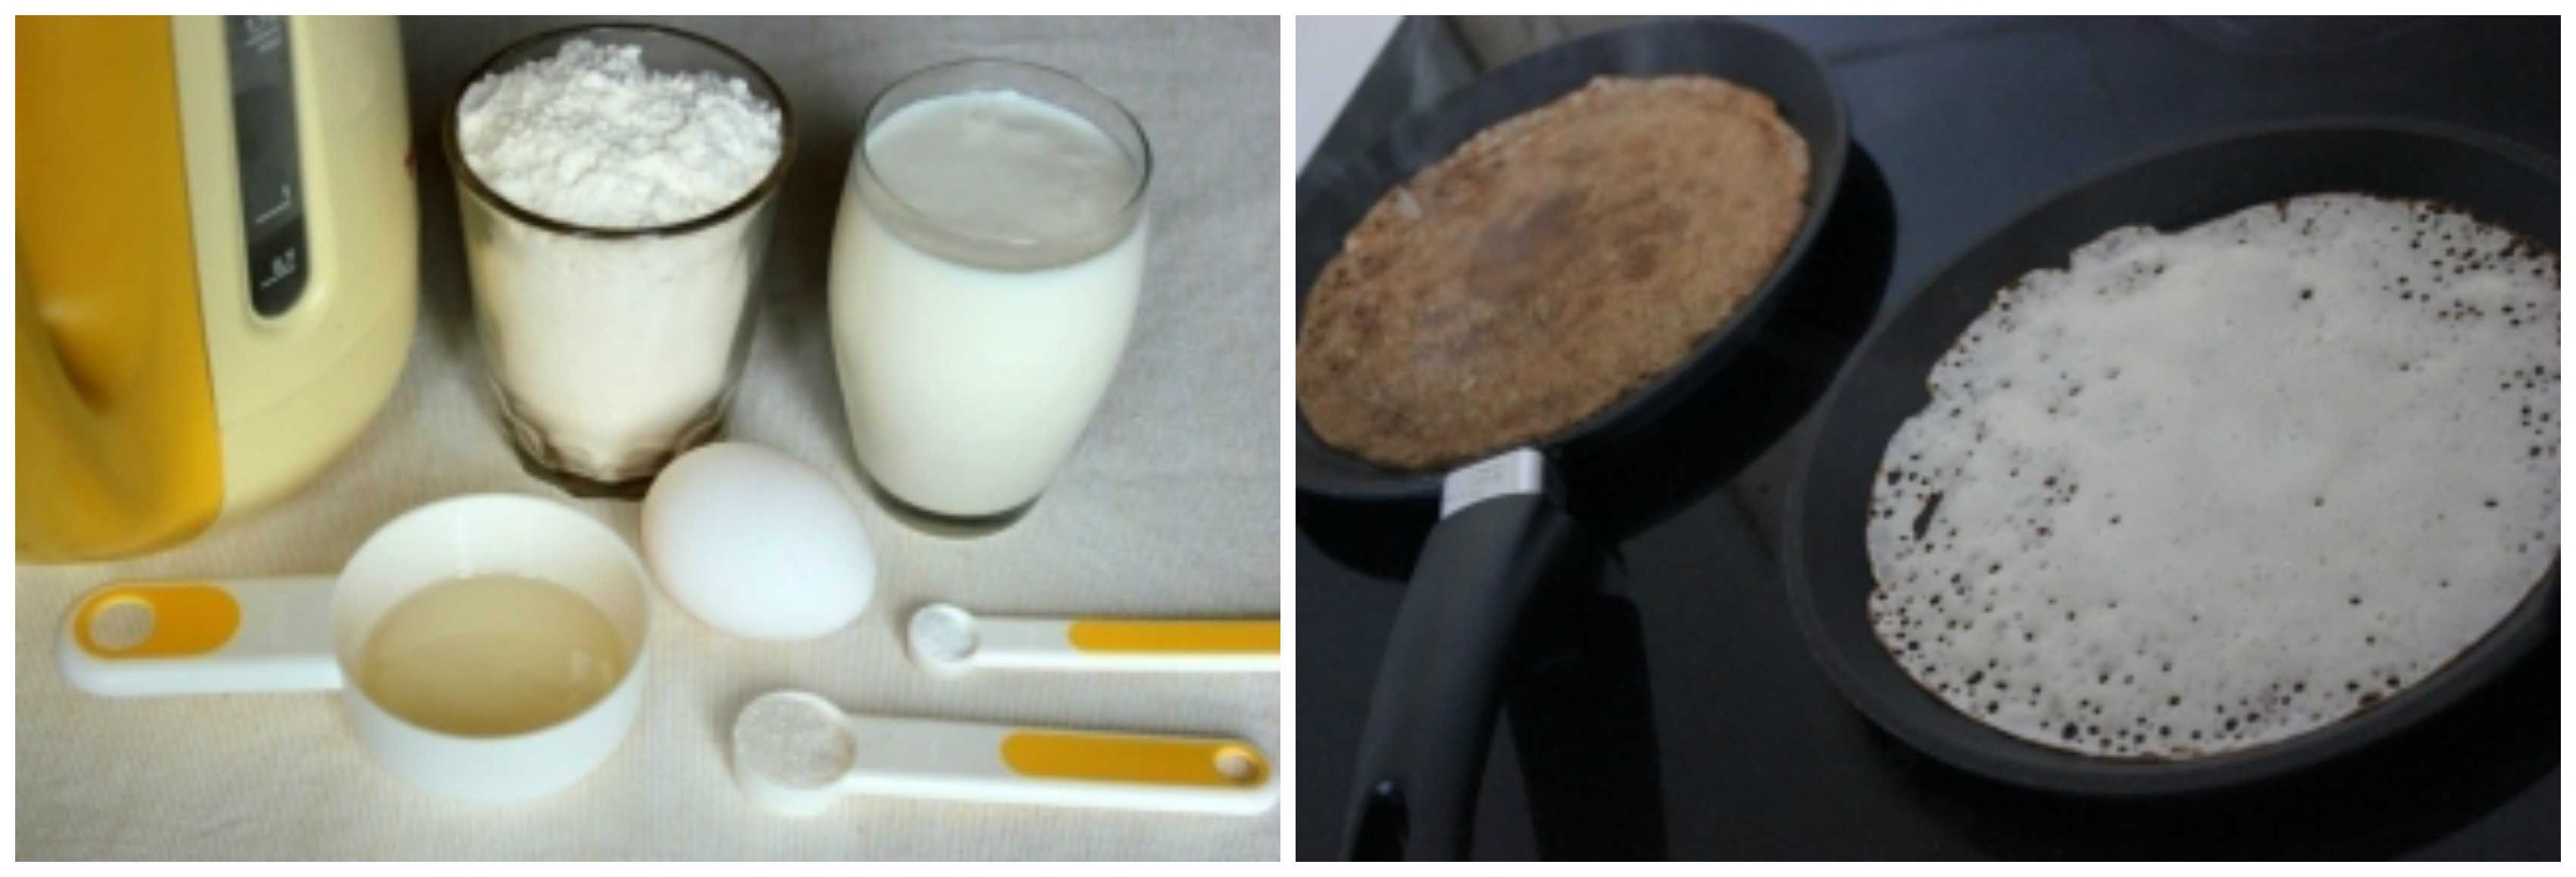 Блины на молоке с содой: рецепт с фото пошагово, с дырочками, видео